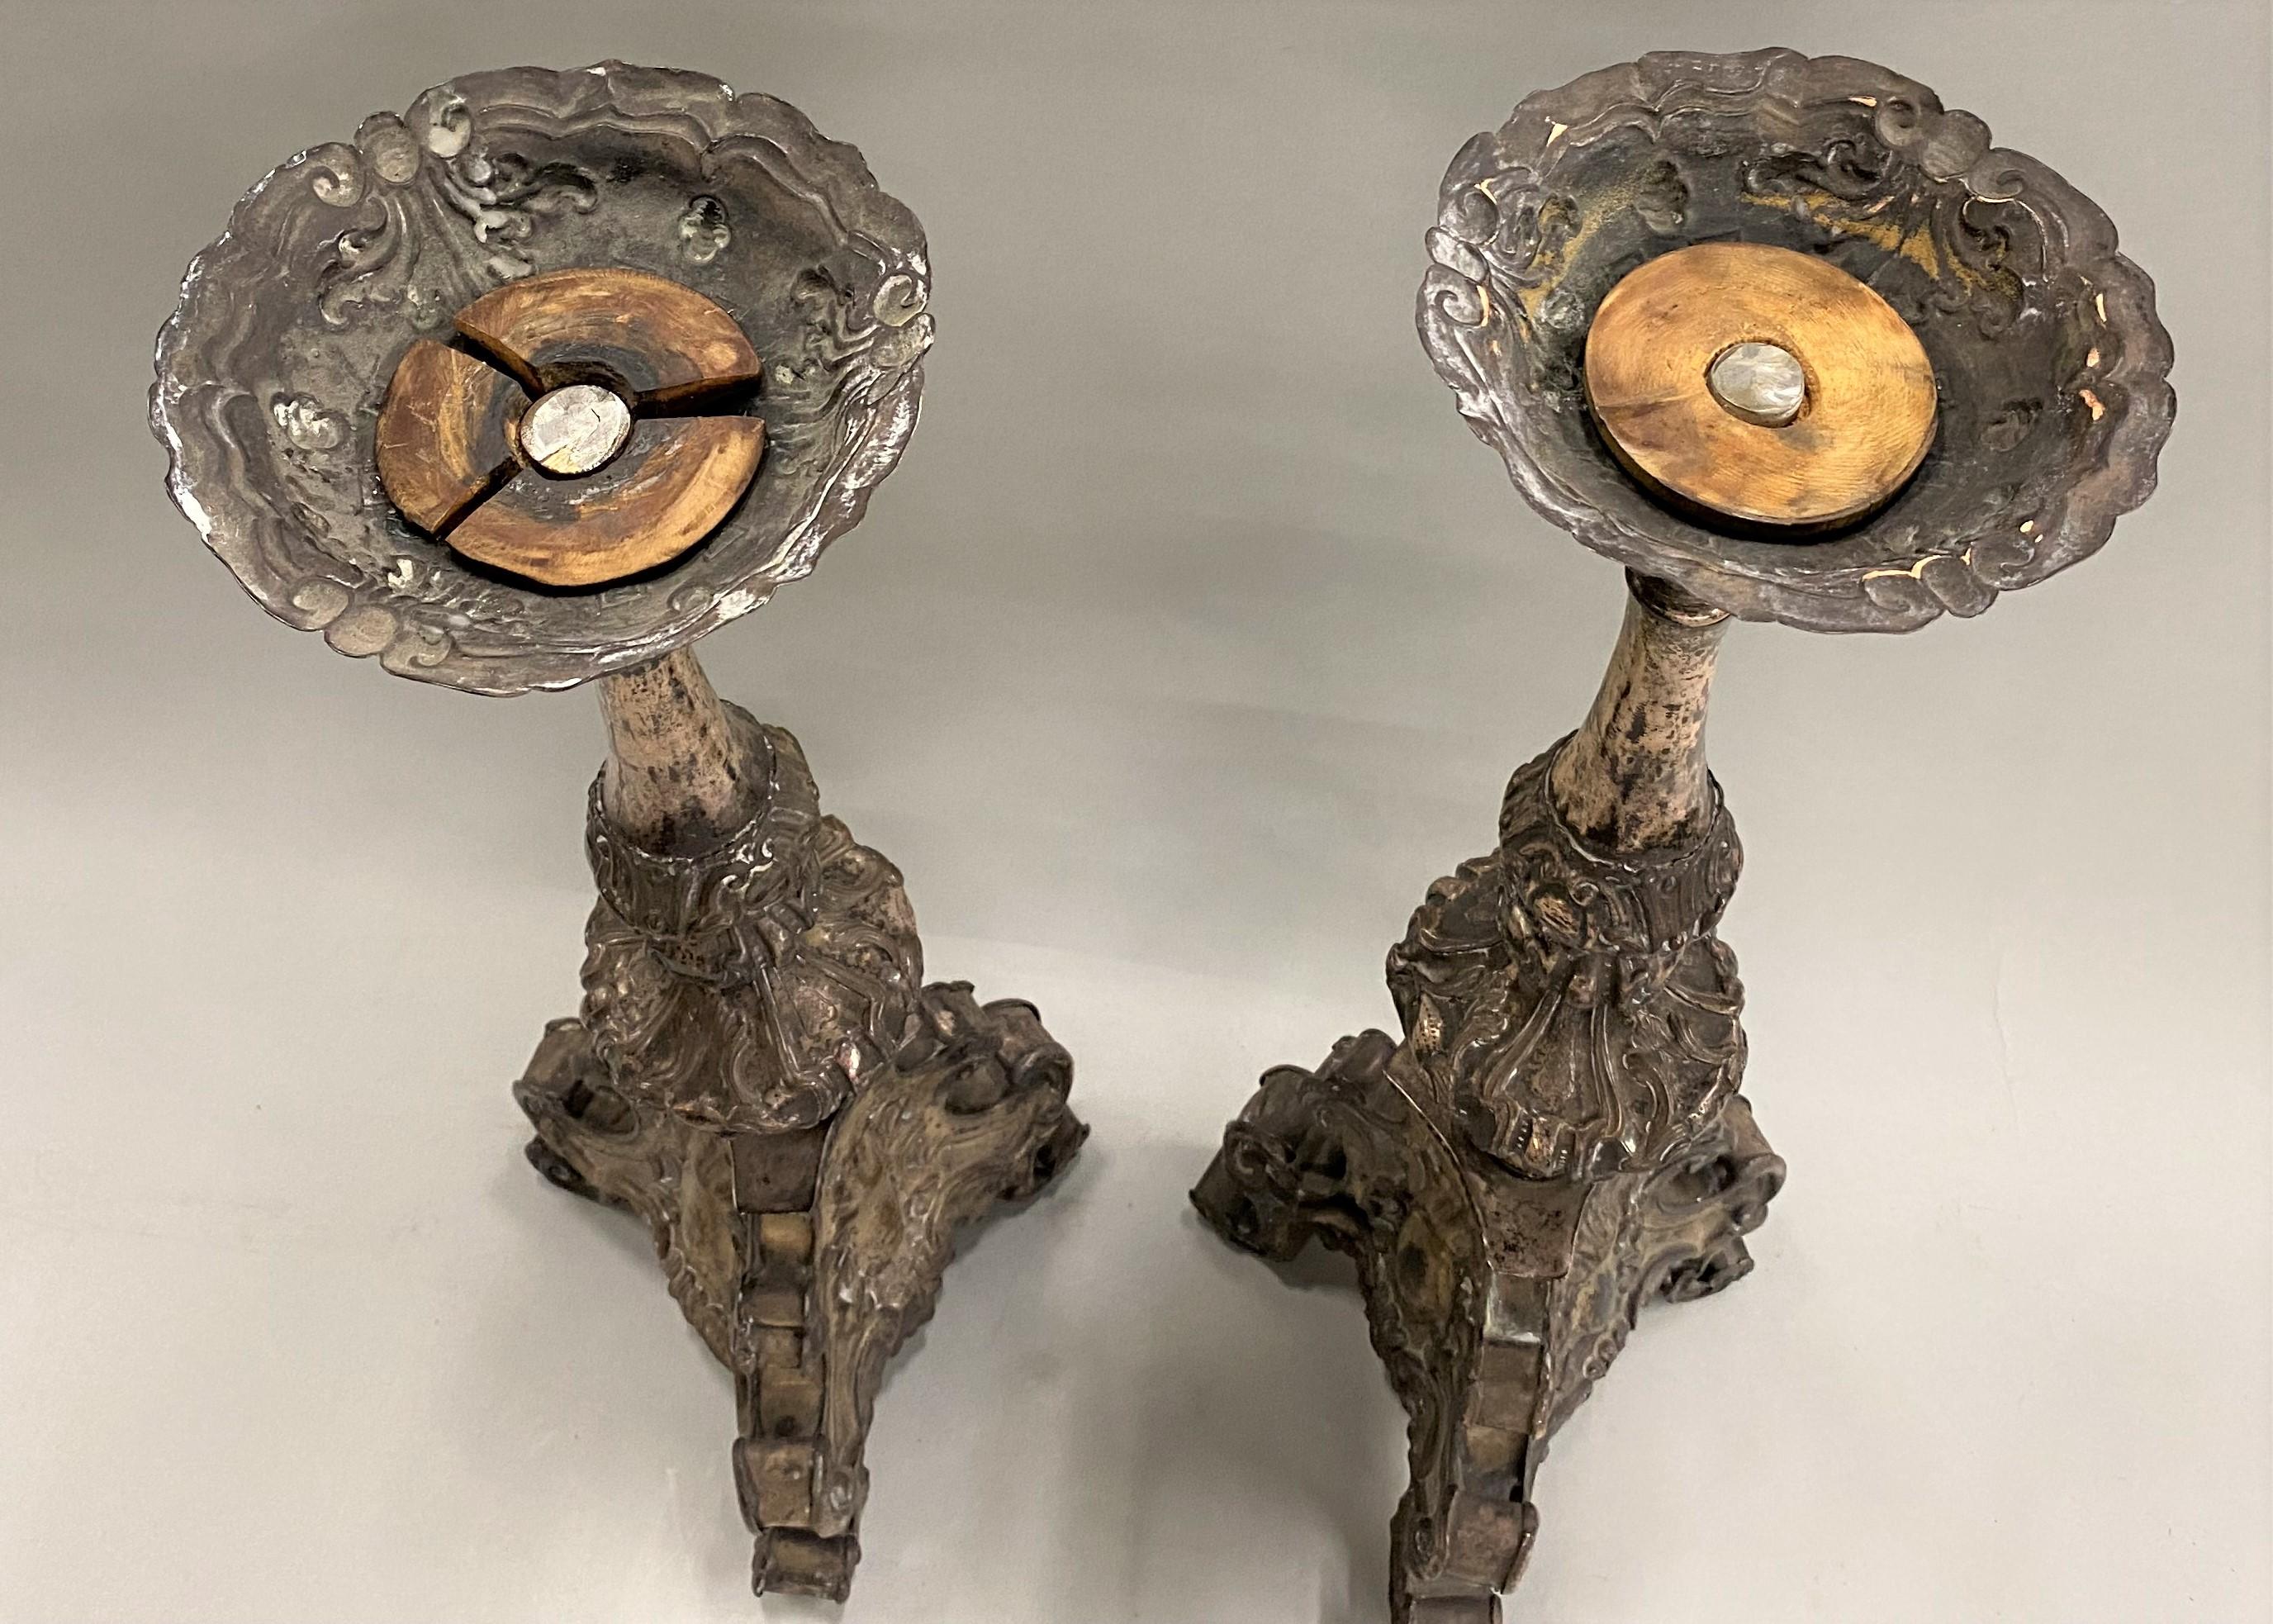 Une belle paire de chandeliers en métal pressé de style baroque italien du XVIIIe siècle avec des bases tripodes en métal sur bois, convertis en lampes à un moment donné, mais dont le câblage et les accessoires de lampe ont été enlevés (de nouvelles